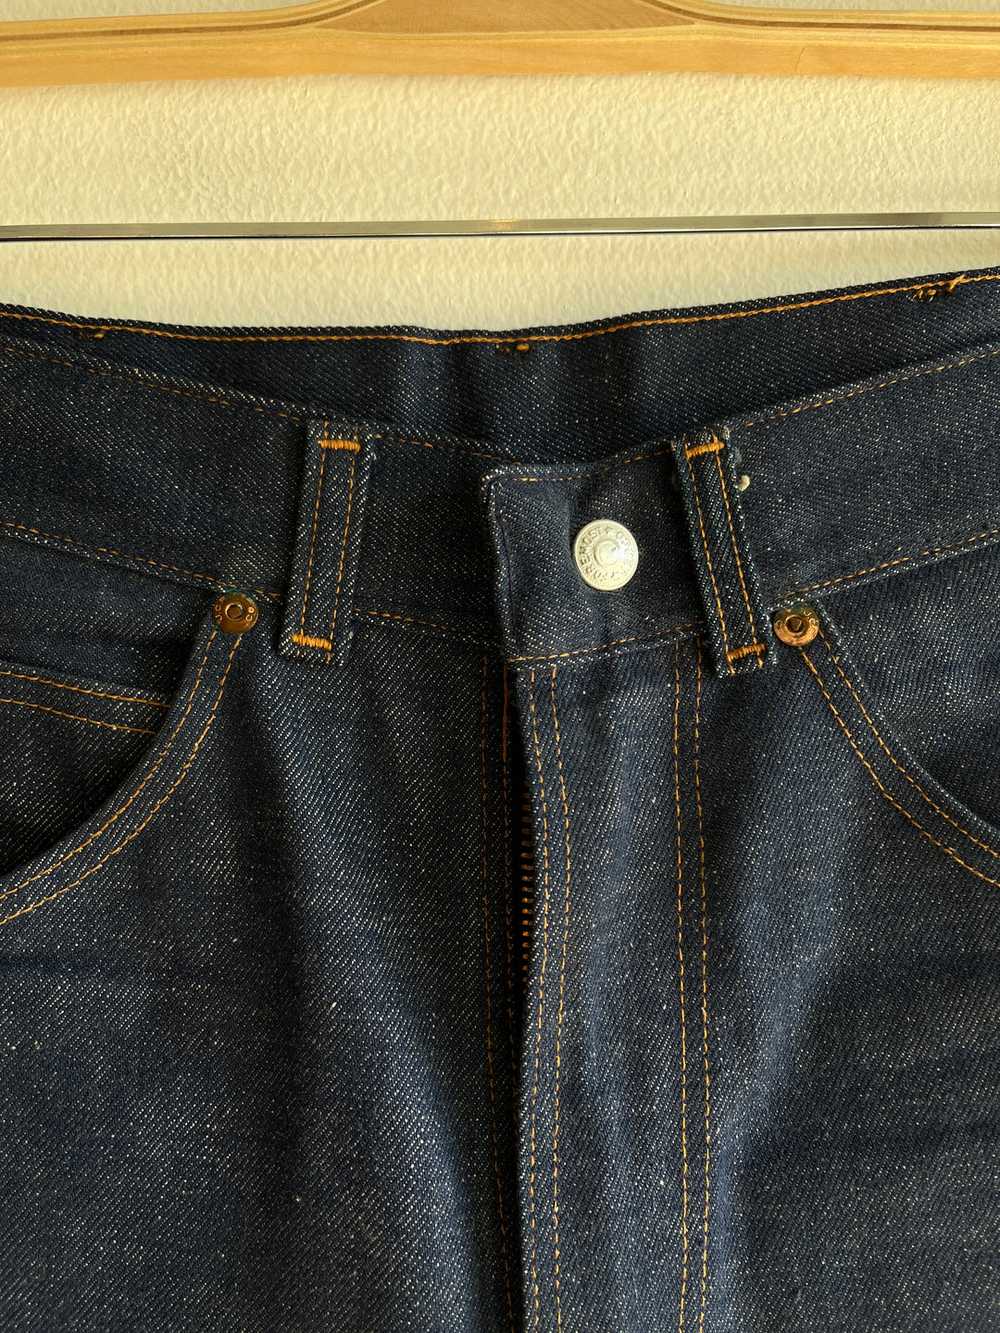 Vintage 1950’s Deadstock Foremost Denim Jeans - image 3